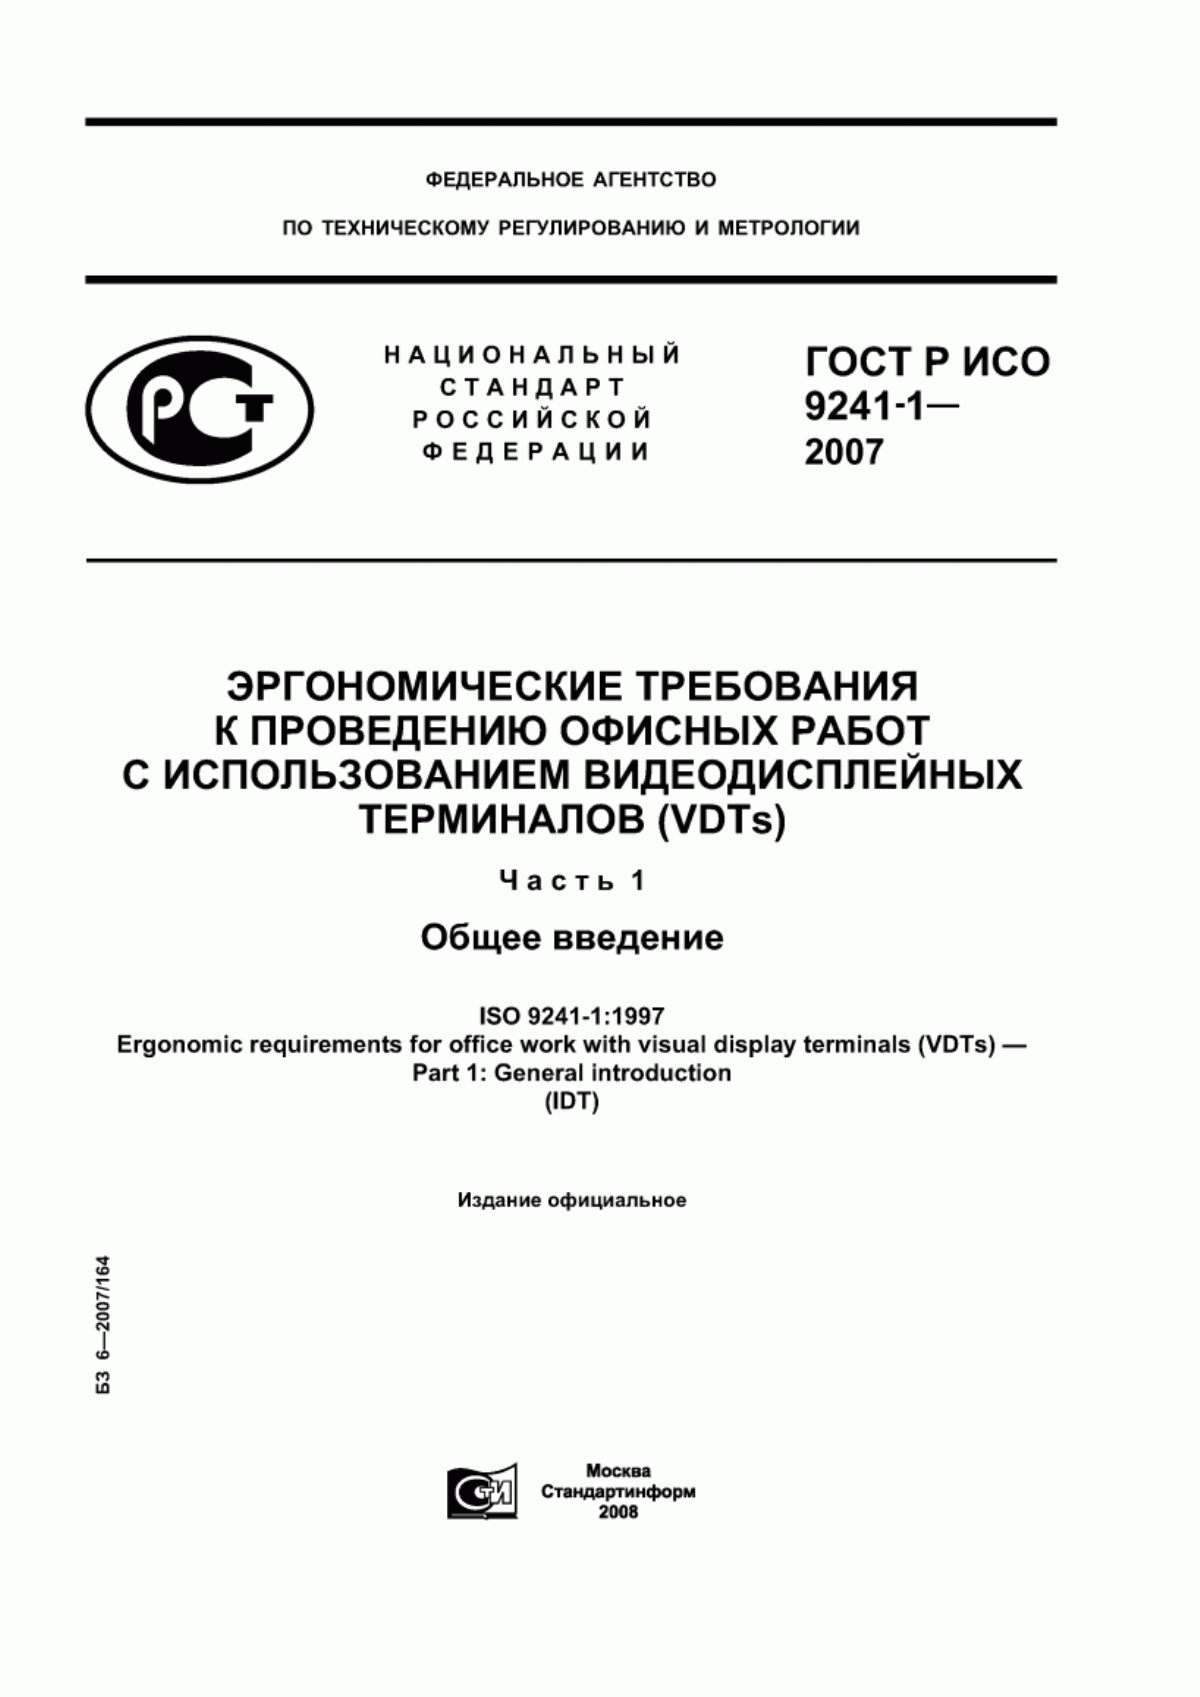 ГОСТ Р ИСО 9241-1-2007 Эргономические требования к проведению офисных работ с использованием видеодисплейных терминалов (VDTs). Часть 1. Общее введение